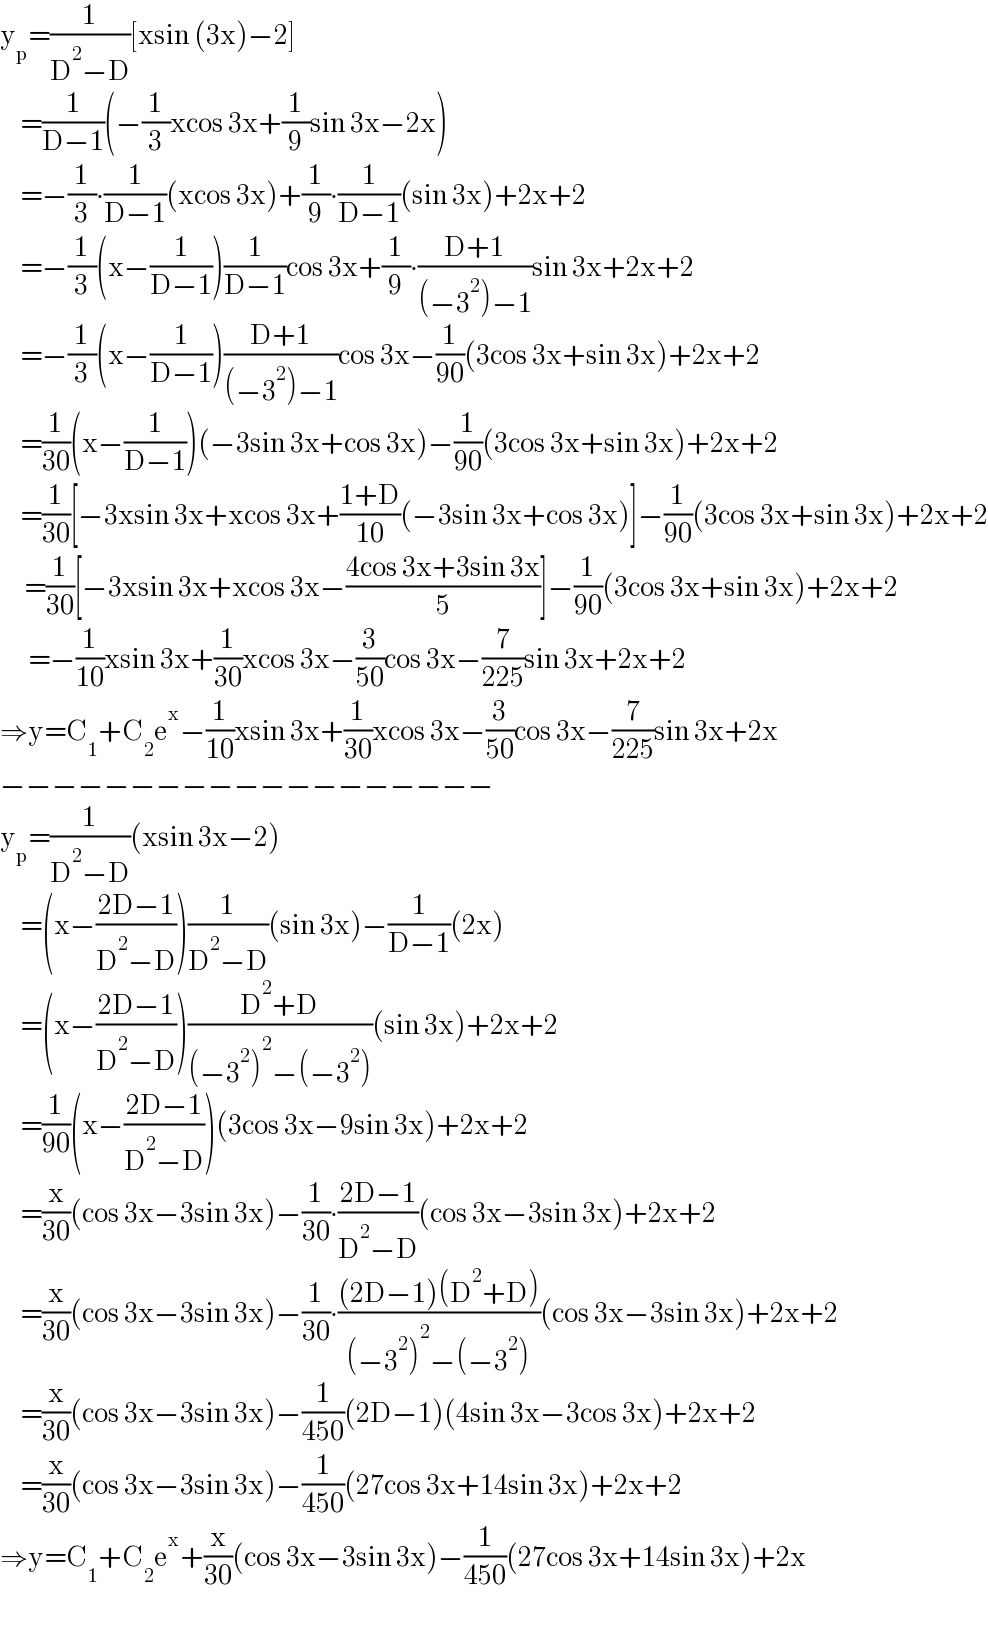 y_p =(1/(D^2 −D))[xsin (3x)−2]       =(1/(D−1))(−(1/3)xcos 3x+(1/9)sin 3x−2x)       =−(1/3)∙(1/(D−1))(xcos 3x)+(1/9)∙(1/(D−1))(sin 3x)+2x+2       =−(1/3)(x−(1/(D−1)))(1/(D−1))cos 3x+(1/9)∙((D+1)/((−3^2 )−1))sin 3x+2x+2       =−(1/3)(x−(1/(D−1)))((D+1)/((−3^2 )−1))cos 3x−(1/(90))(3cos 3x+sin 3x)+2x+2       =(1/(30))(x−(1/(D−1)))(−3sin 3x+cos 3x)−(1/(90))(3cos 3x+sin 3x)+2x+2       =(1/(30))[−3xsin 3x+xcos 3x+((1+D)/(10))(−3sin 3x+cos 3x)]−(1/(90))(3cos 3x+sin 3x)+2x+2        =(1/(30))[−3xsin 3x+xcos 3x−((4cos 3x+3sin 3x)/5)]−(1/(90))(3cos 3x+sin 3x)+2x+2         =−(1/(10))xsin 3x+(1/(30))xcos 3x−(3/(50))cos 3x−(7/(225))sin 3x+2x+2  ⇒y=C_1 +C_2 e^x −(1/(10))xsin 3x+(1/(30))xcos 3x−(3/(50))cos 3x−(7/(225))sin 3x+2x  −−−−−−−−−−−−−−−−−−−  y_p =(1/(D^2 −D))(xsin 3x−2)       =(x−((2D−1)/(D^2 −D)))(1/(D^2 −D))(sin 3x)−(1/(D−1))(2x)       =(x−((2D−1)/(D^2 −D)))((D^2 +D)/((−3^2 )^2 −(−3^2 )))(sin 3x)+2x+2       =(1/(90))(x−((2D−1)/(D^2 −D)))(3cos 3x−9sin 3x)+2x+2       =(x/(30))(cos 3x−3sin 3x)−(1/(30))∙((2D−1)/(D^2 −D))(cos 3x−3sin 3x)+2x+2       =(x/(30))(cos 3x−3sin 3x)−(1/(30))∙(((2D−1)(D^2 +D))/((−3^2 )^2 −(−3^2 )))(cos 3x−3sin 3x)+2x+2       =(x/(30))(cos 3x−3sin 3x)−(1/(450))(2D−1)(4sin 3x−3cos 3x)+2x+2       =(x/(30))(cos 3x−3sin 3x)−(1/(450))(27cos 3x+14sin 3x)+2x+2  ⇒y=C_1 +C_2 e^x +(x/(30))(cos 3x−3sin 3x)−(1/(450))(27cos 3x+14sin 3x)+2x  